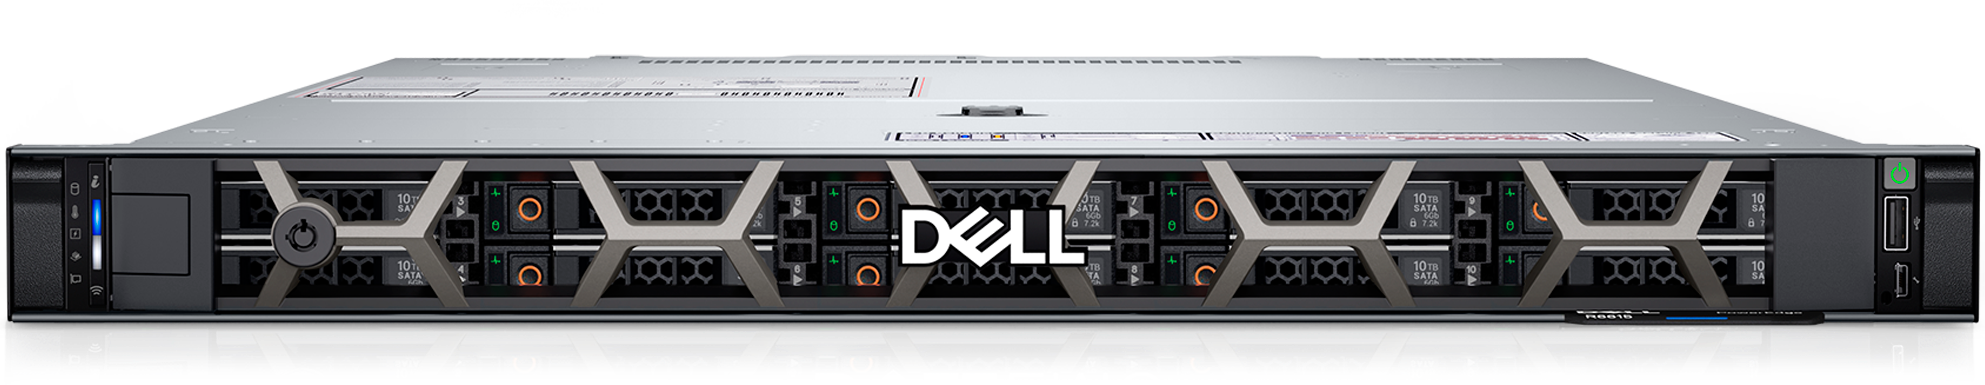 PowerEdge R6615ラックサーバー | Dell 日本